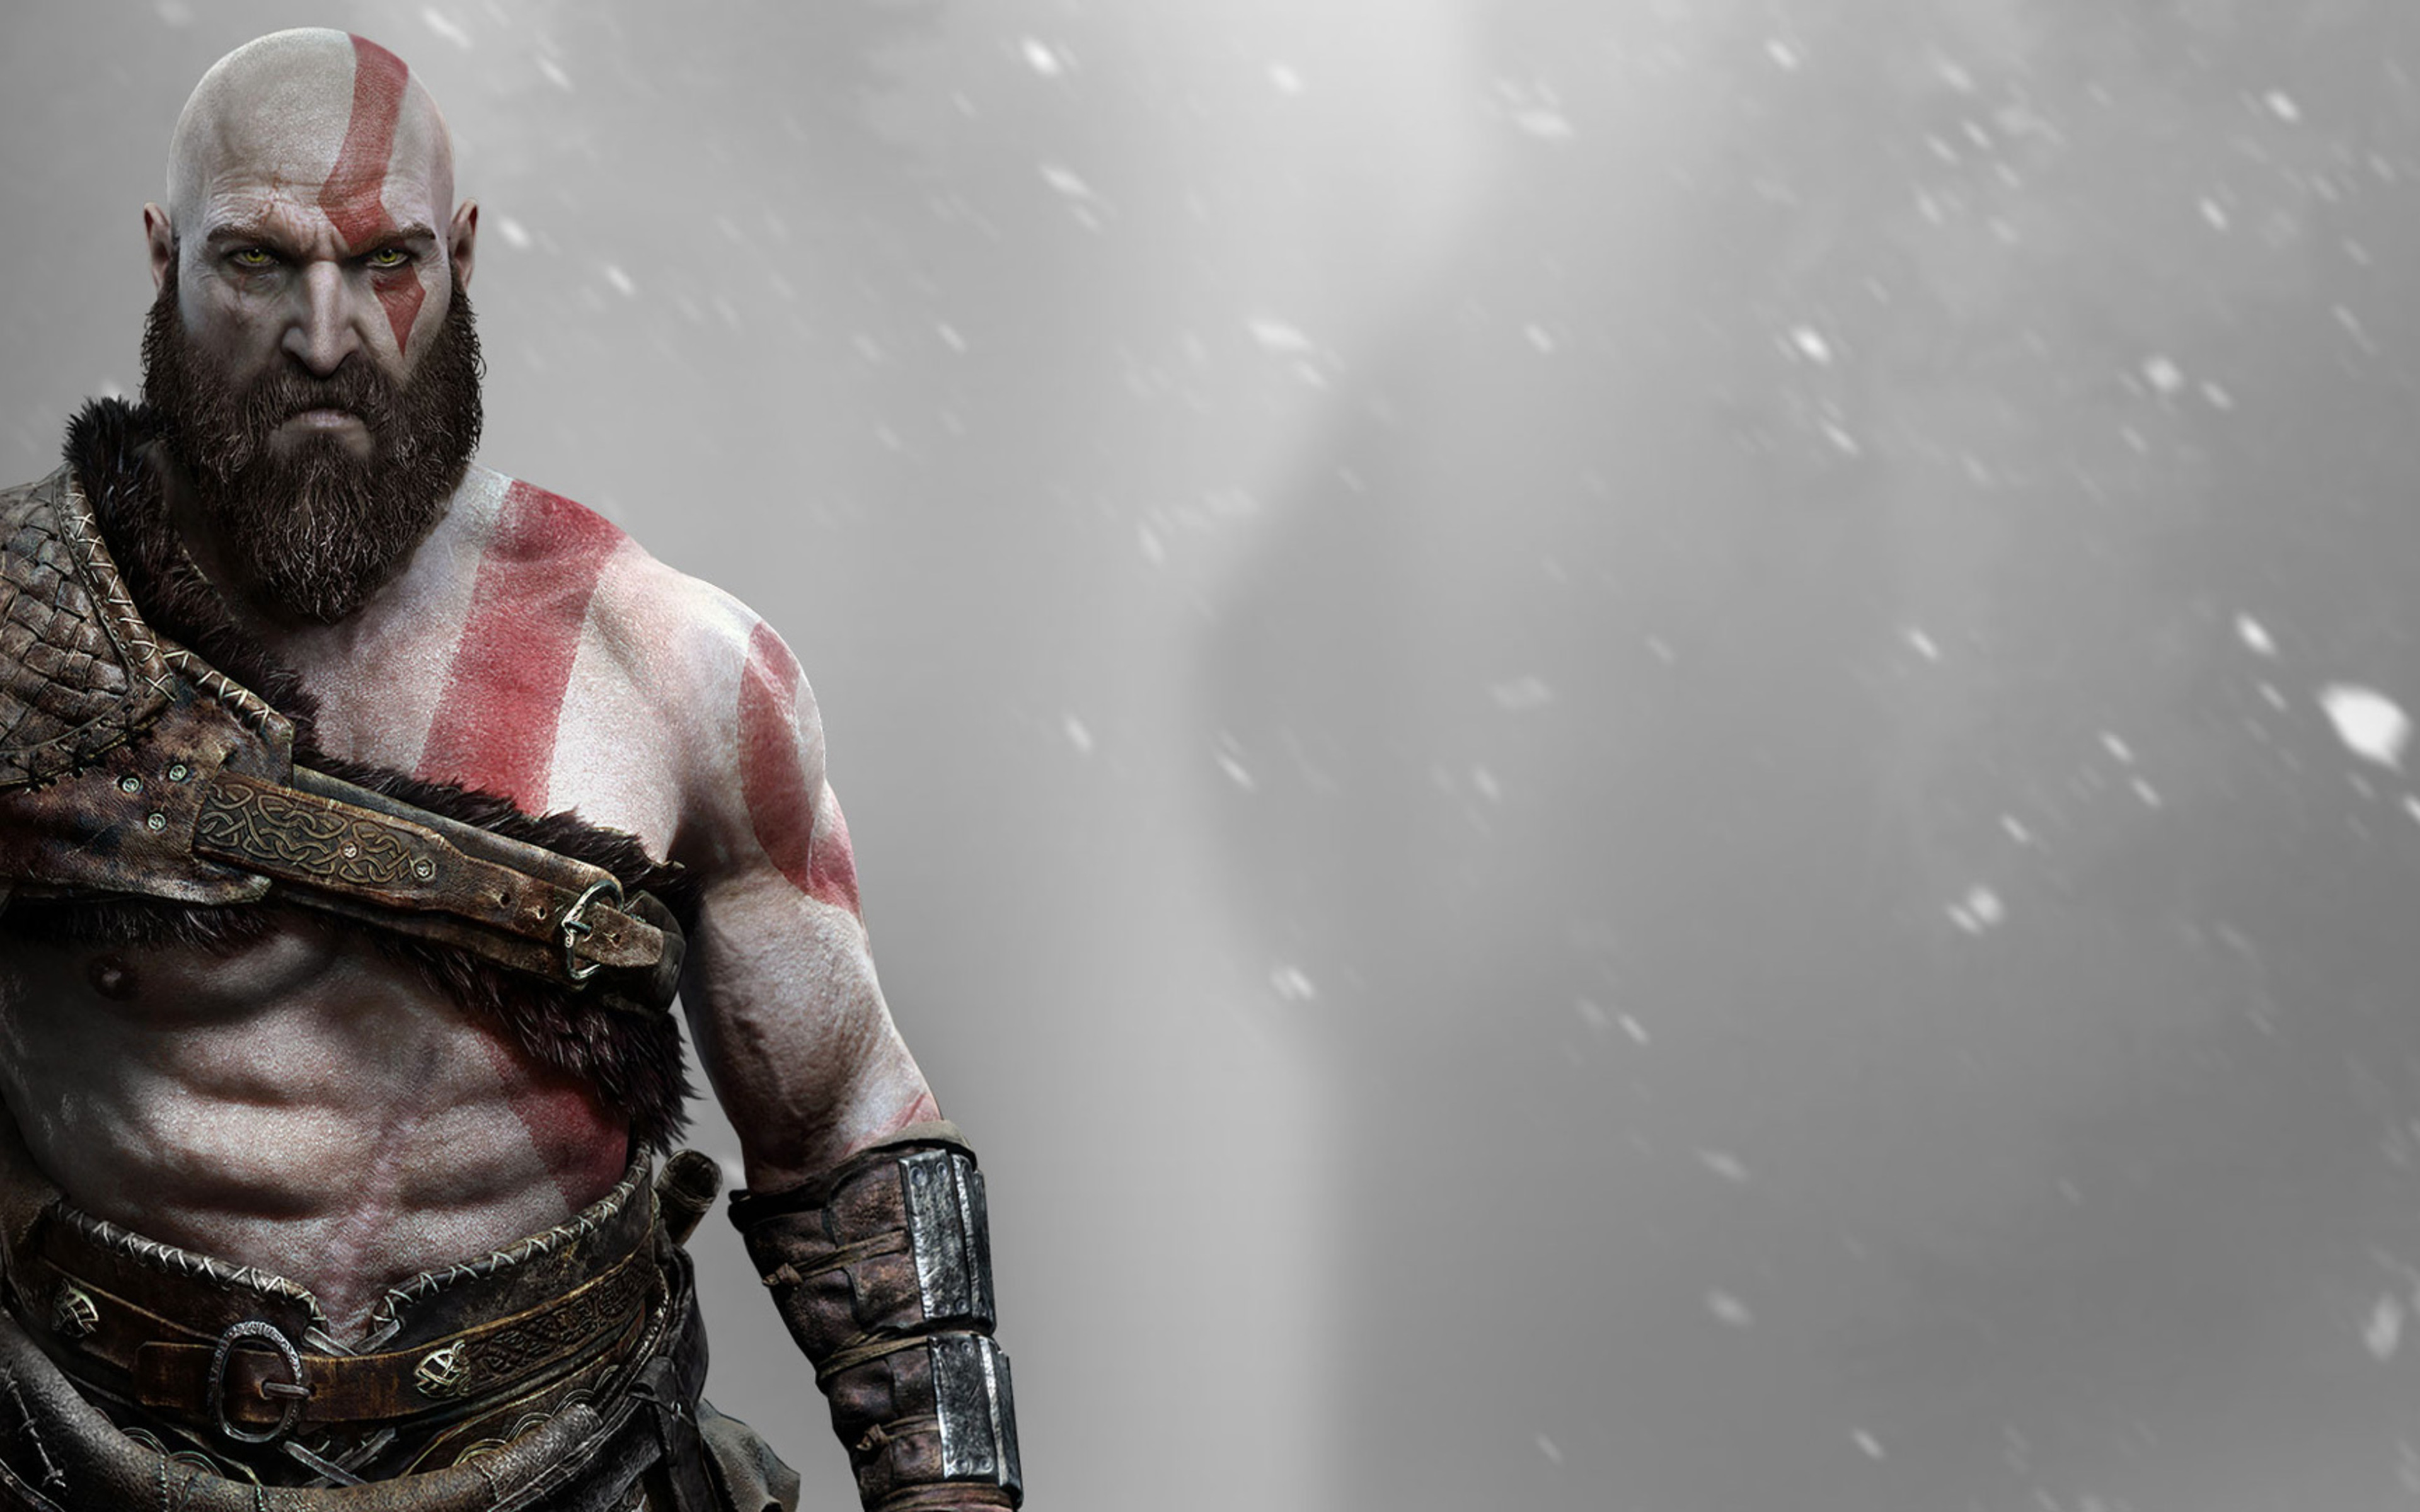 kratos wallpaper,fictional character,action figure,screenshot,cg artwork,flesh